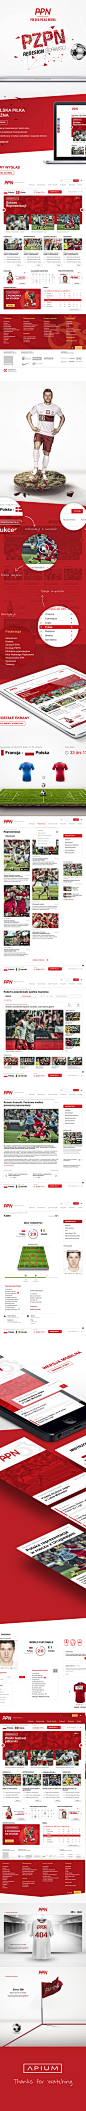 Polska Pilka Nozna : Koncepcja strony dla największej organizacji piłkarskiej w kraju / Draft 2013